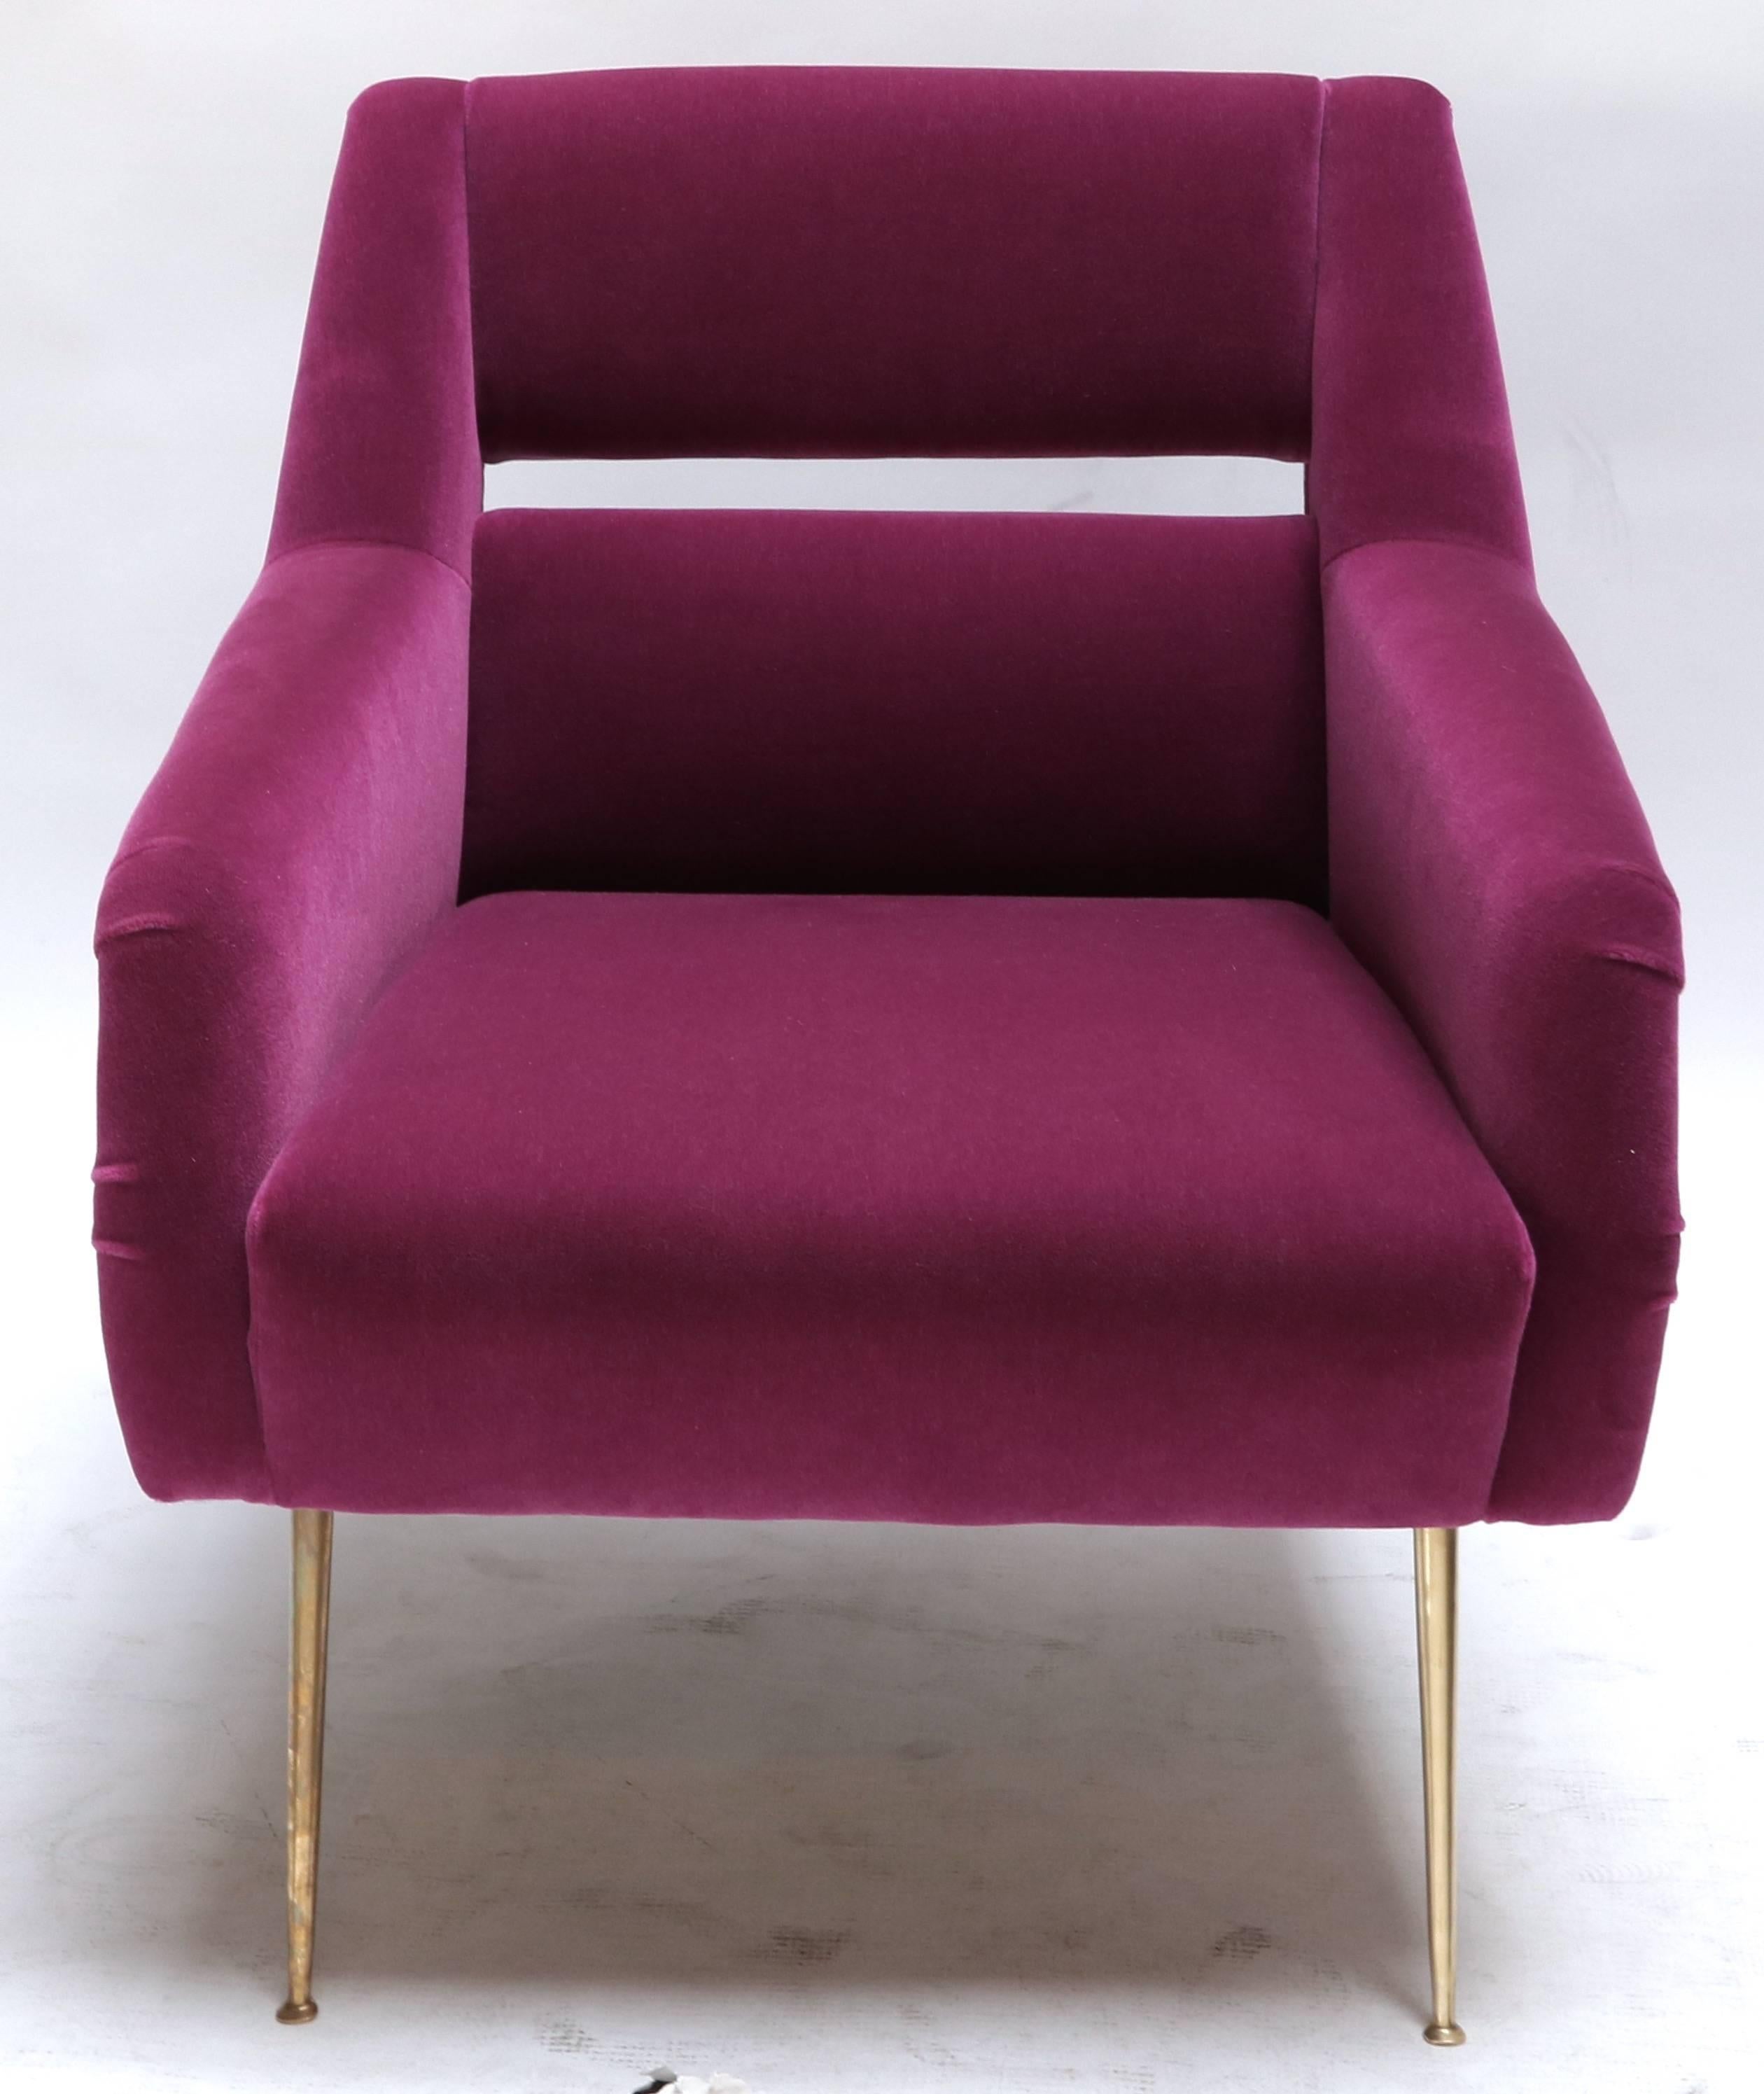 Maßgefertigte Sessel im italienischen Stil der 1960er Jahre mit Messingbeinen und fuchsiafarbener Mohairpolsterung.  Hergestellt in Los Angeles von Adesso Imports. Kann auch in anderen Stoffen und Farben hergestellt werden.